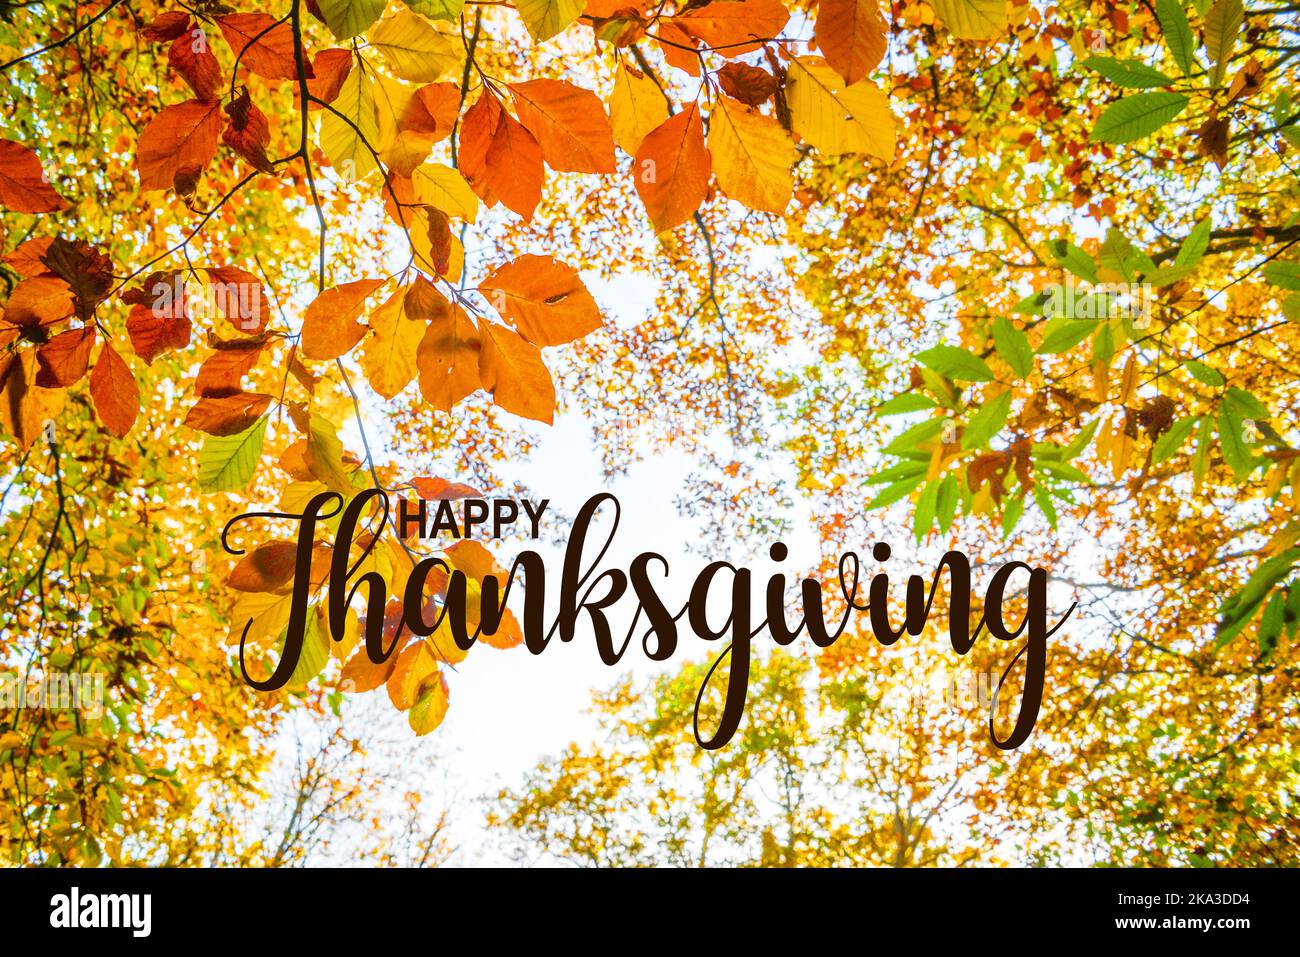 Bonne carte de Thanksgiving. L'automne part contre le ciel, regardant dans une forêt en automne Banque D'Images